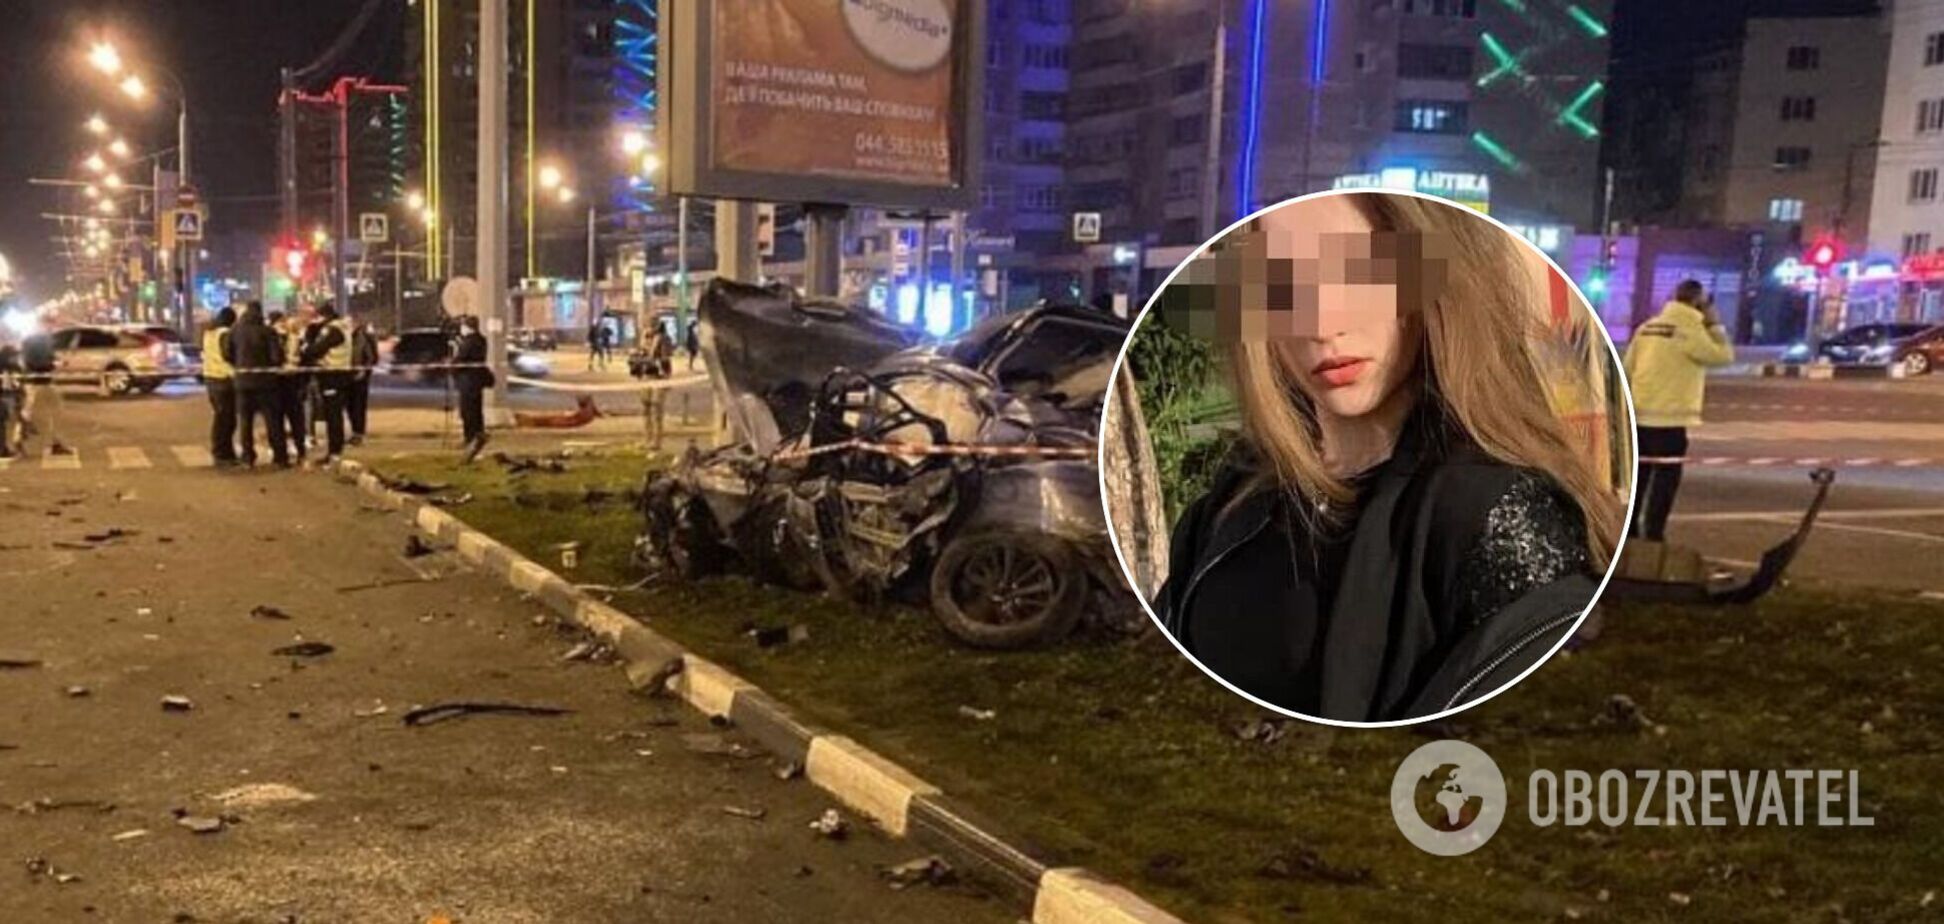 Находившаяся в Infiniti девушка рассказала, кто был за рулем авто во время ДТП в Харькове